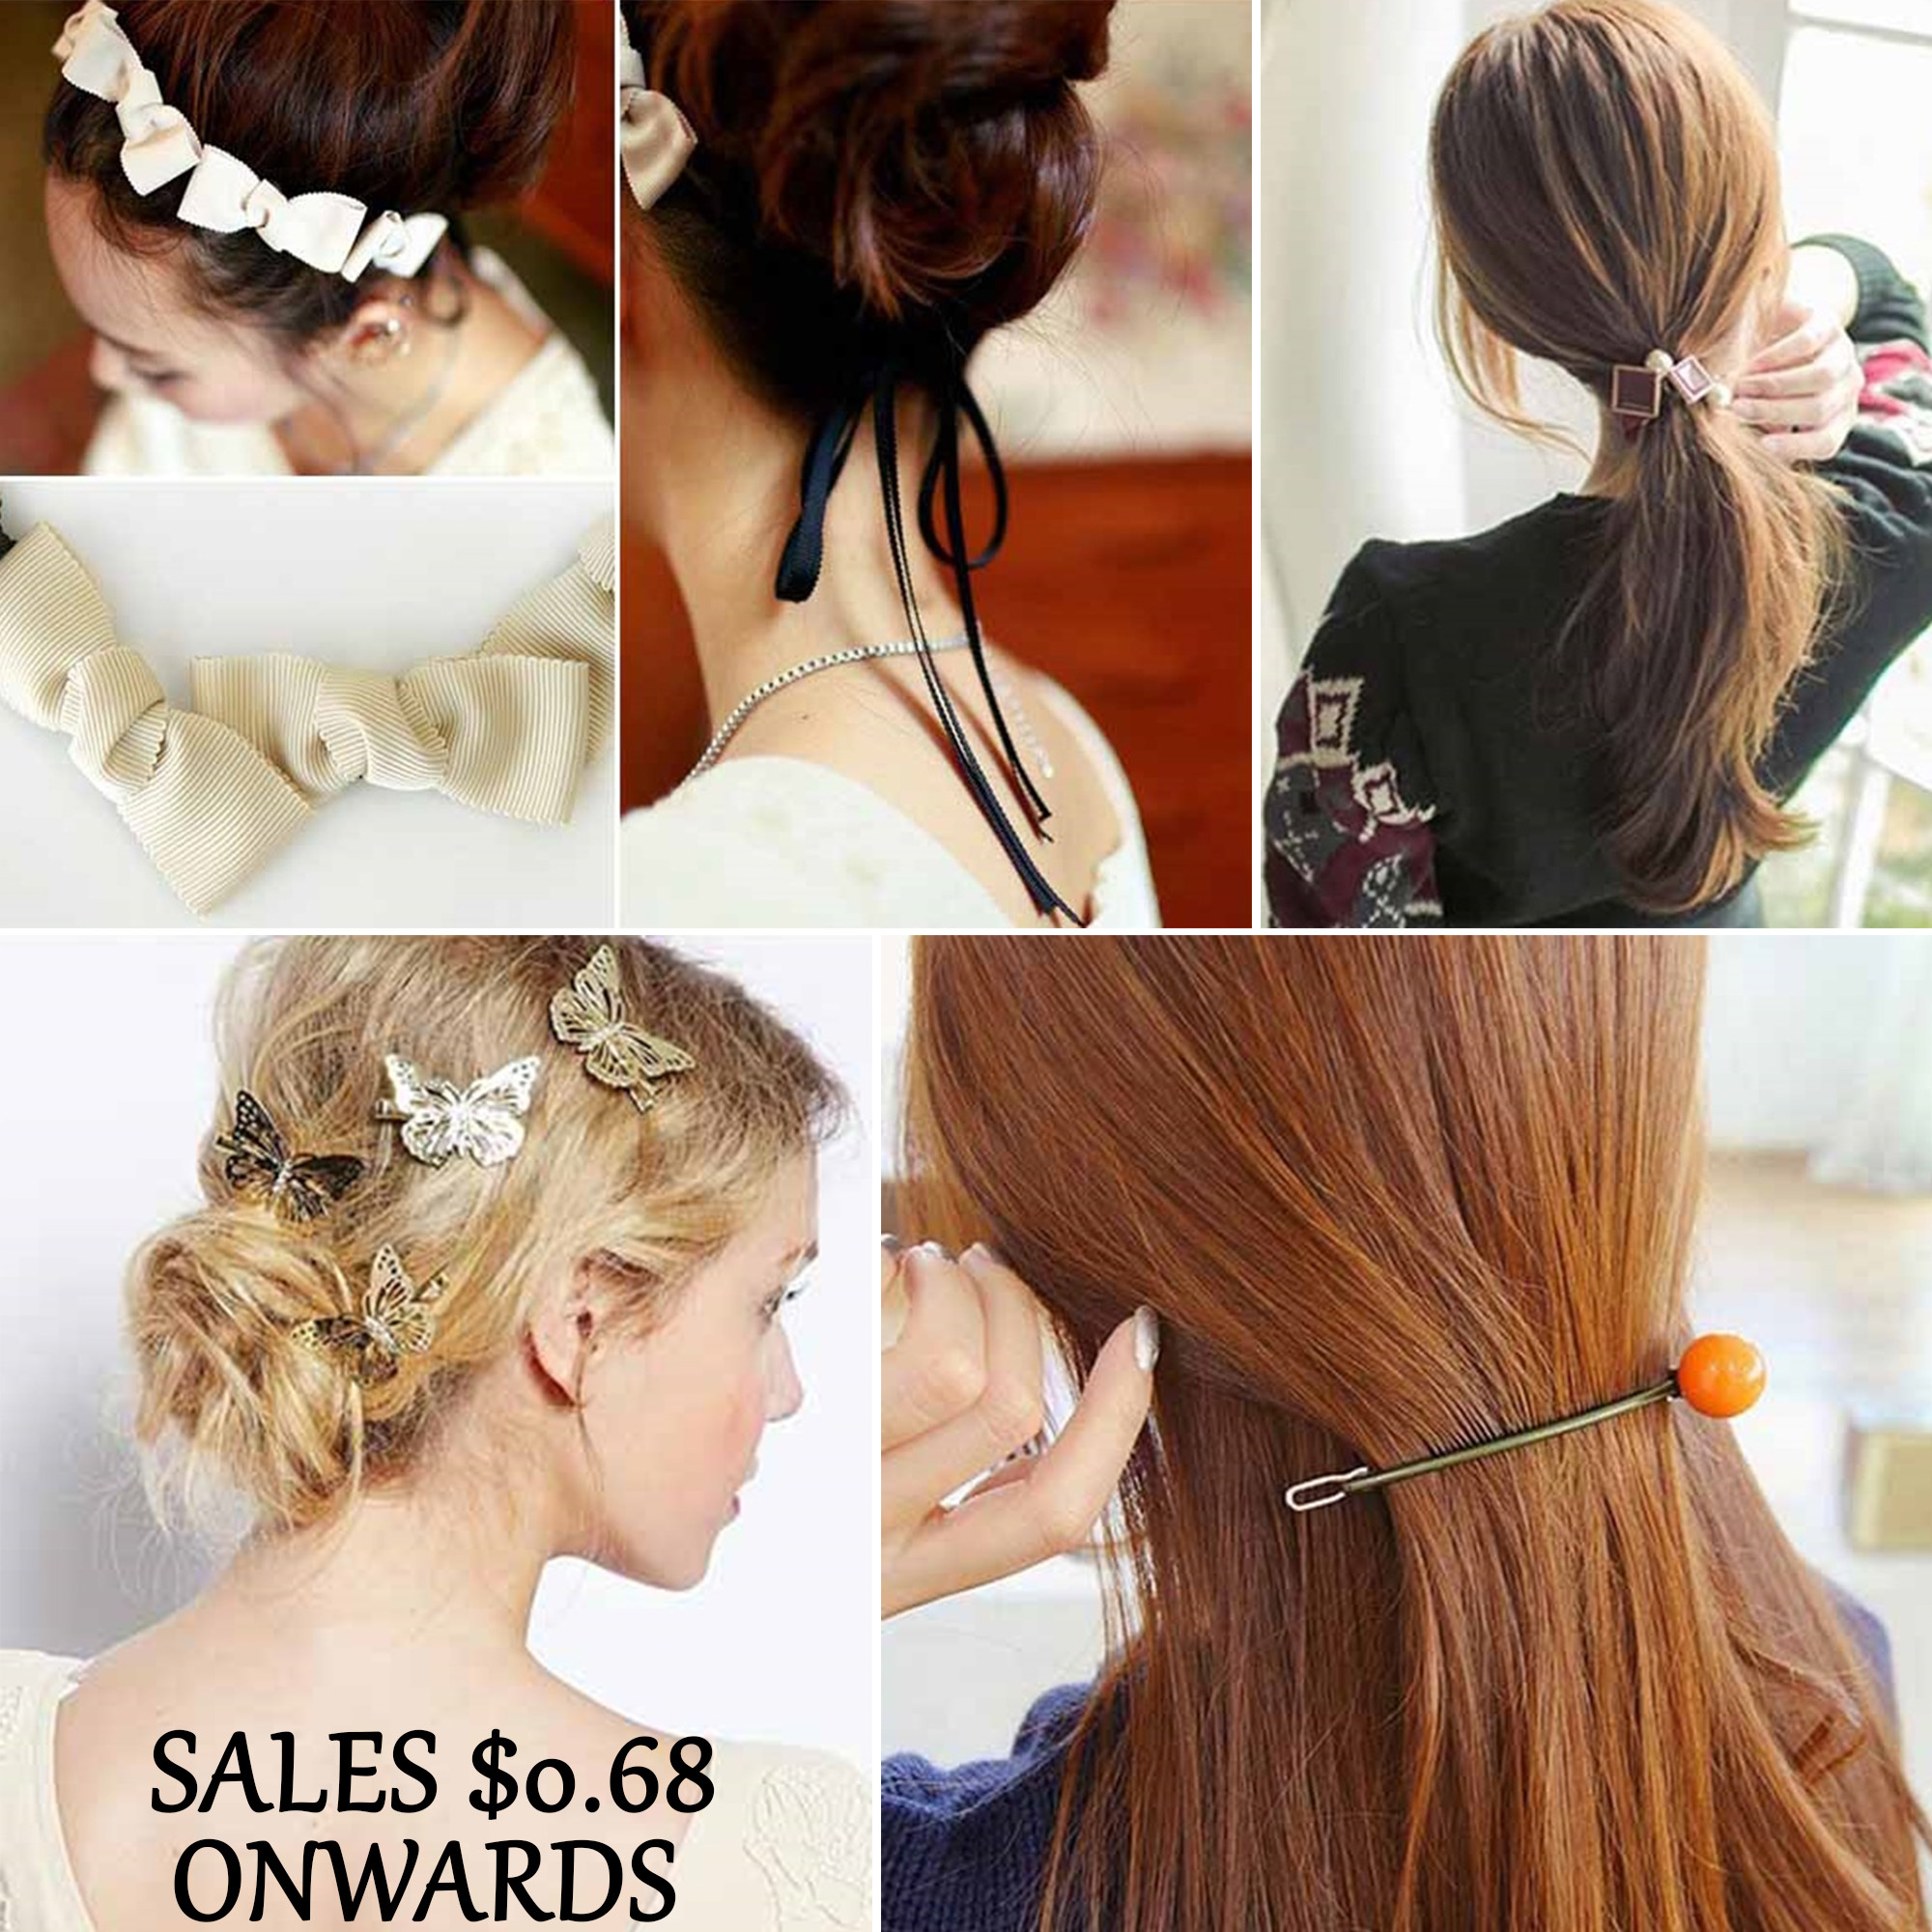 korean hair accessories